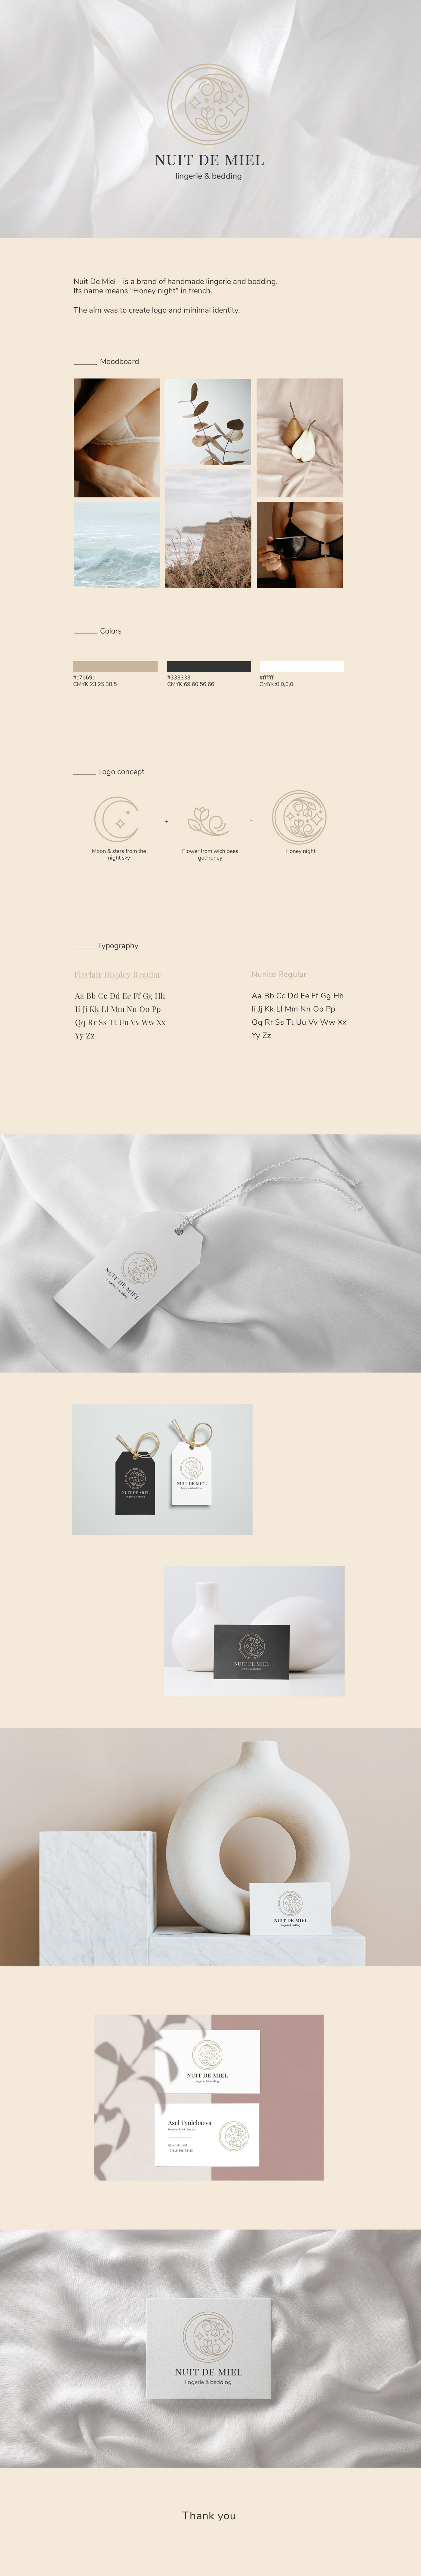 bedding branding  design graphicdesign identity lingerie logo